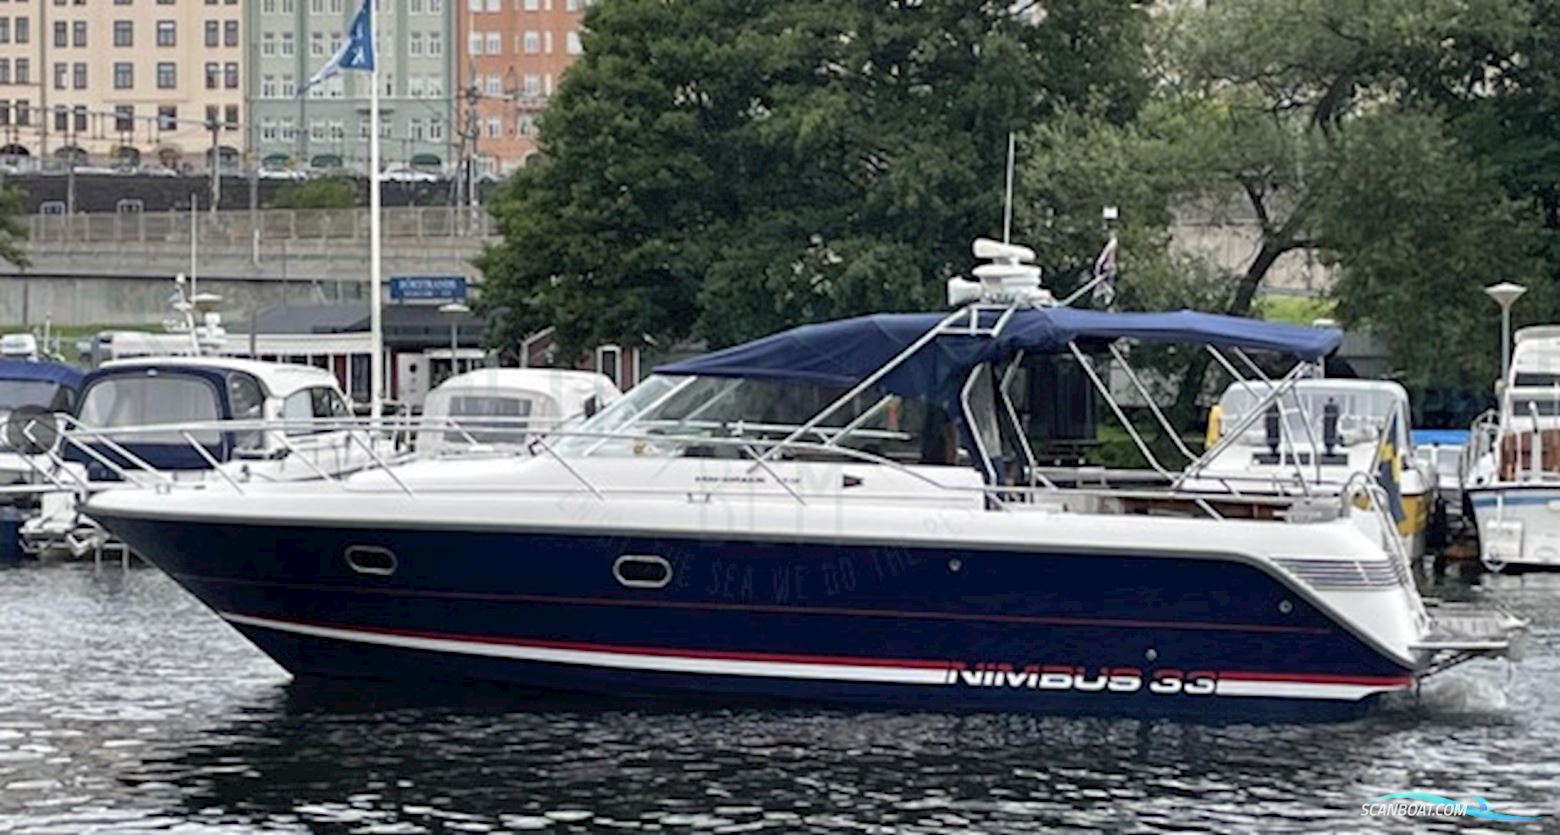 Nimbus 33 Nova Motorbåd 2001, med Volvo Penta Kad 44 motor, Sverige